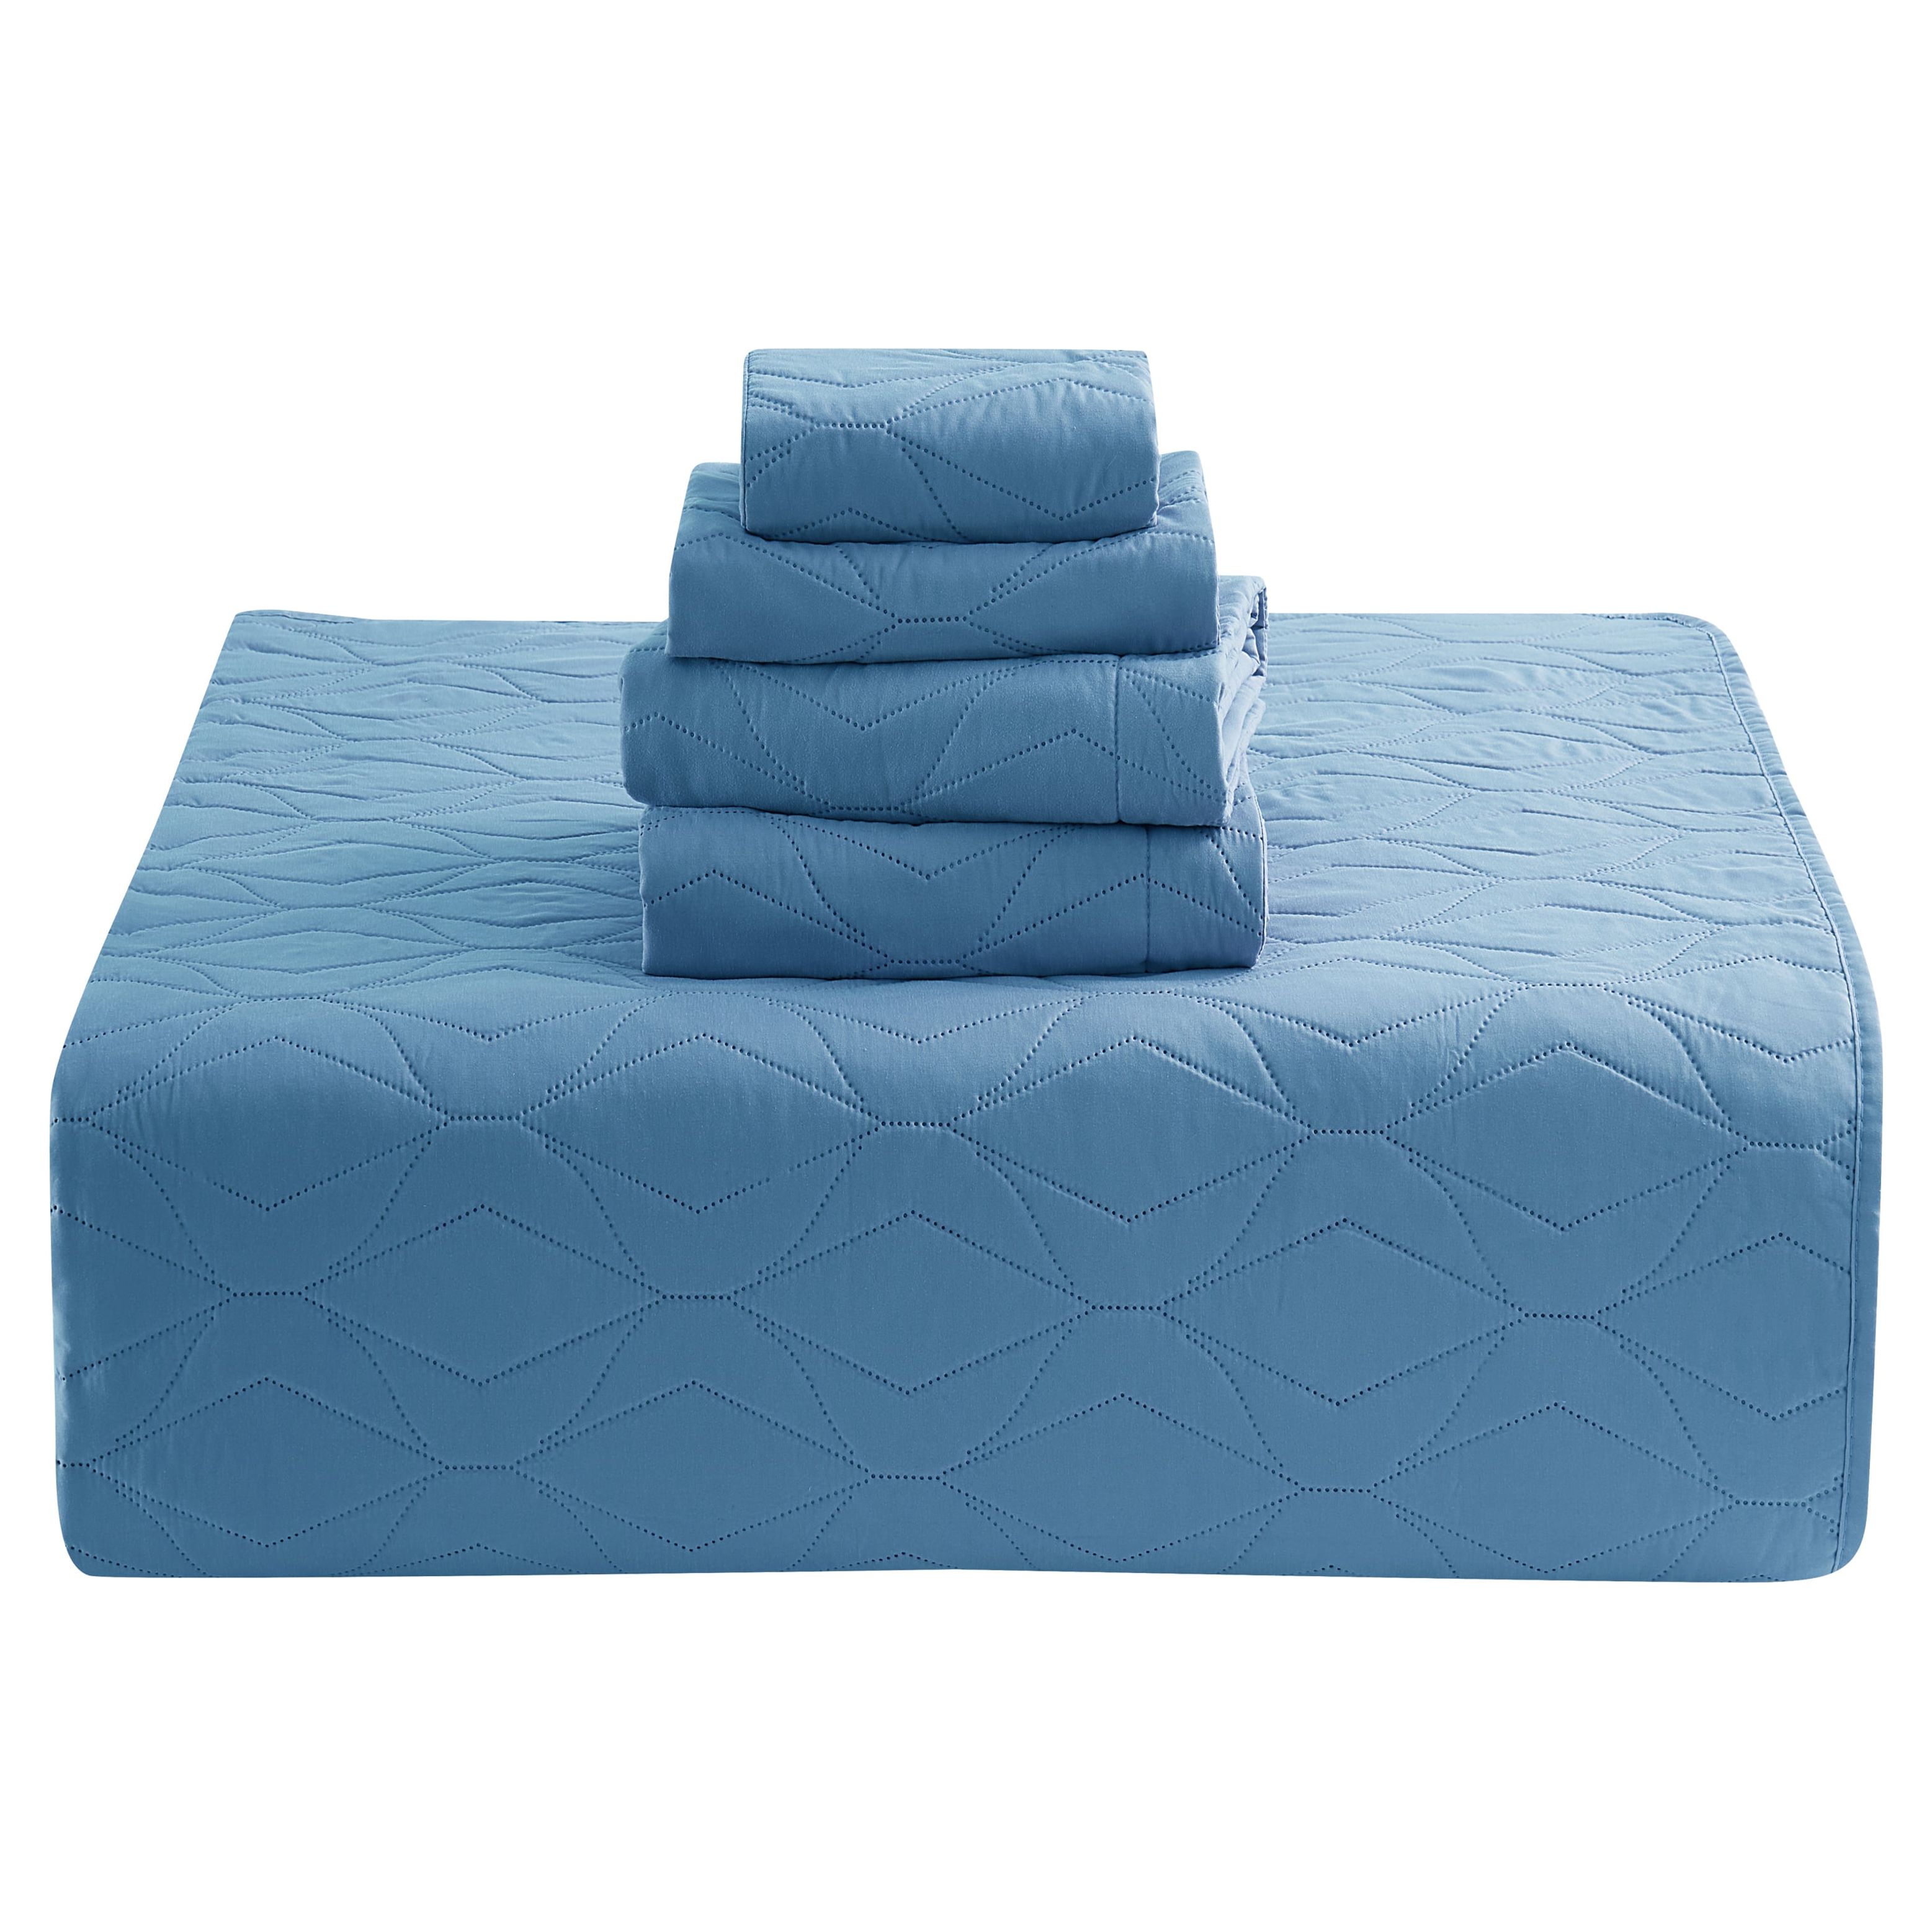 Clara Clark Quilt Set Queen Bedspread, 5-Piece Ellipse Weave Lightweight Coverlet, Blue Heaven - image 5 of 5